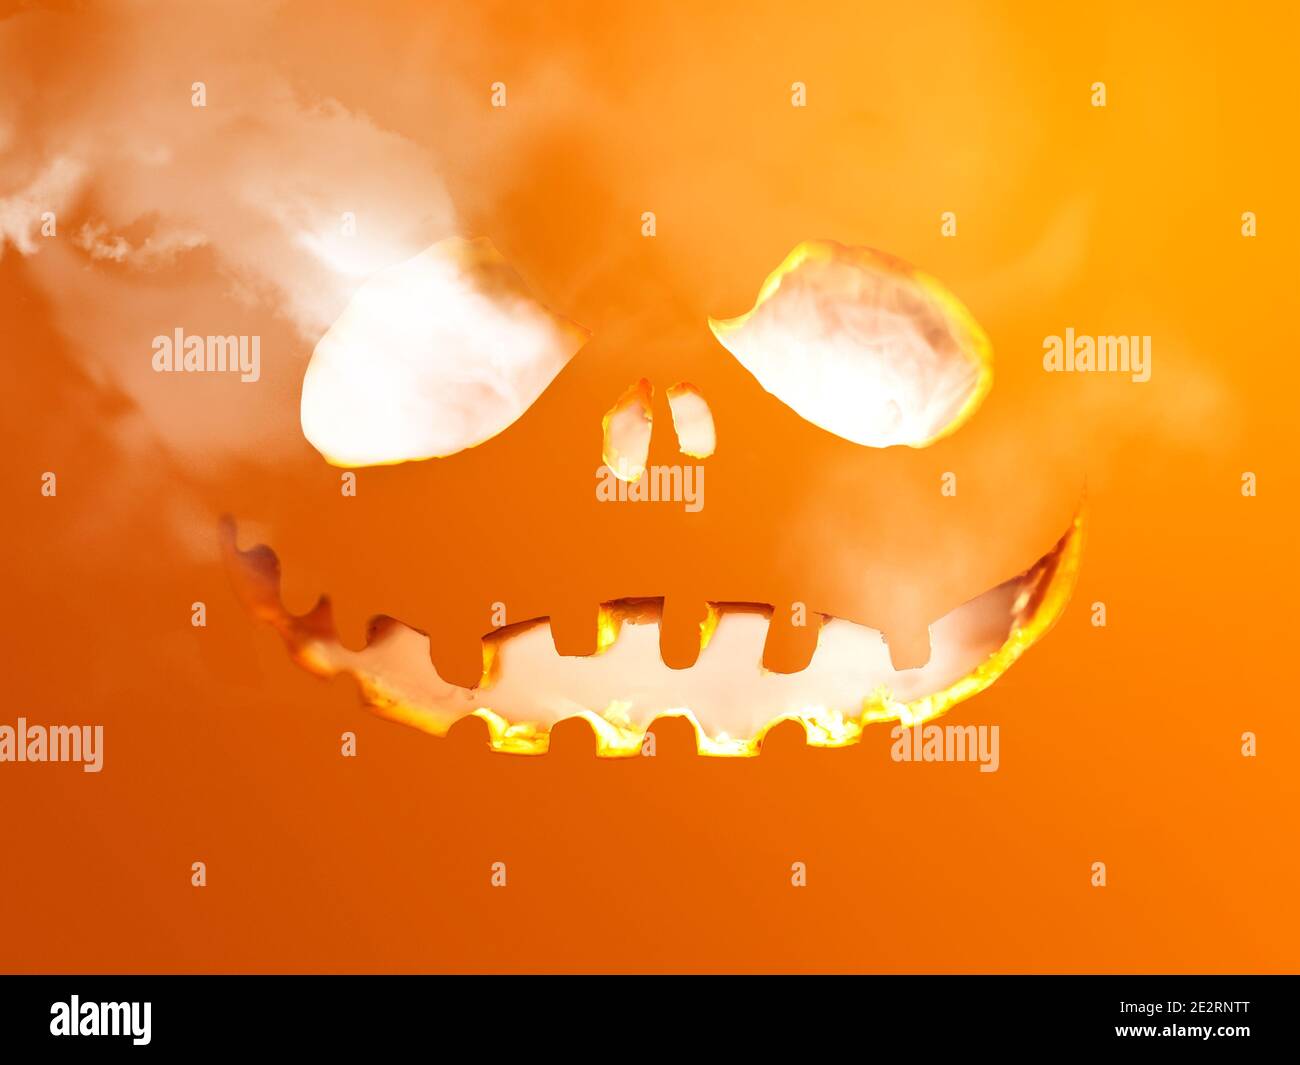 Halloween tema tallado agujero en una superficie plana con humo saliendo. Foto de stock